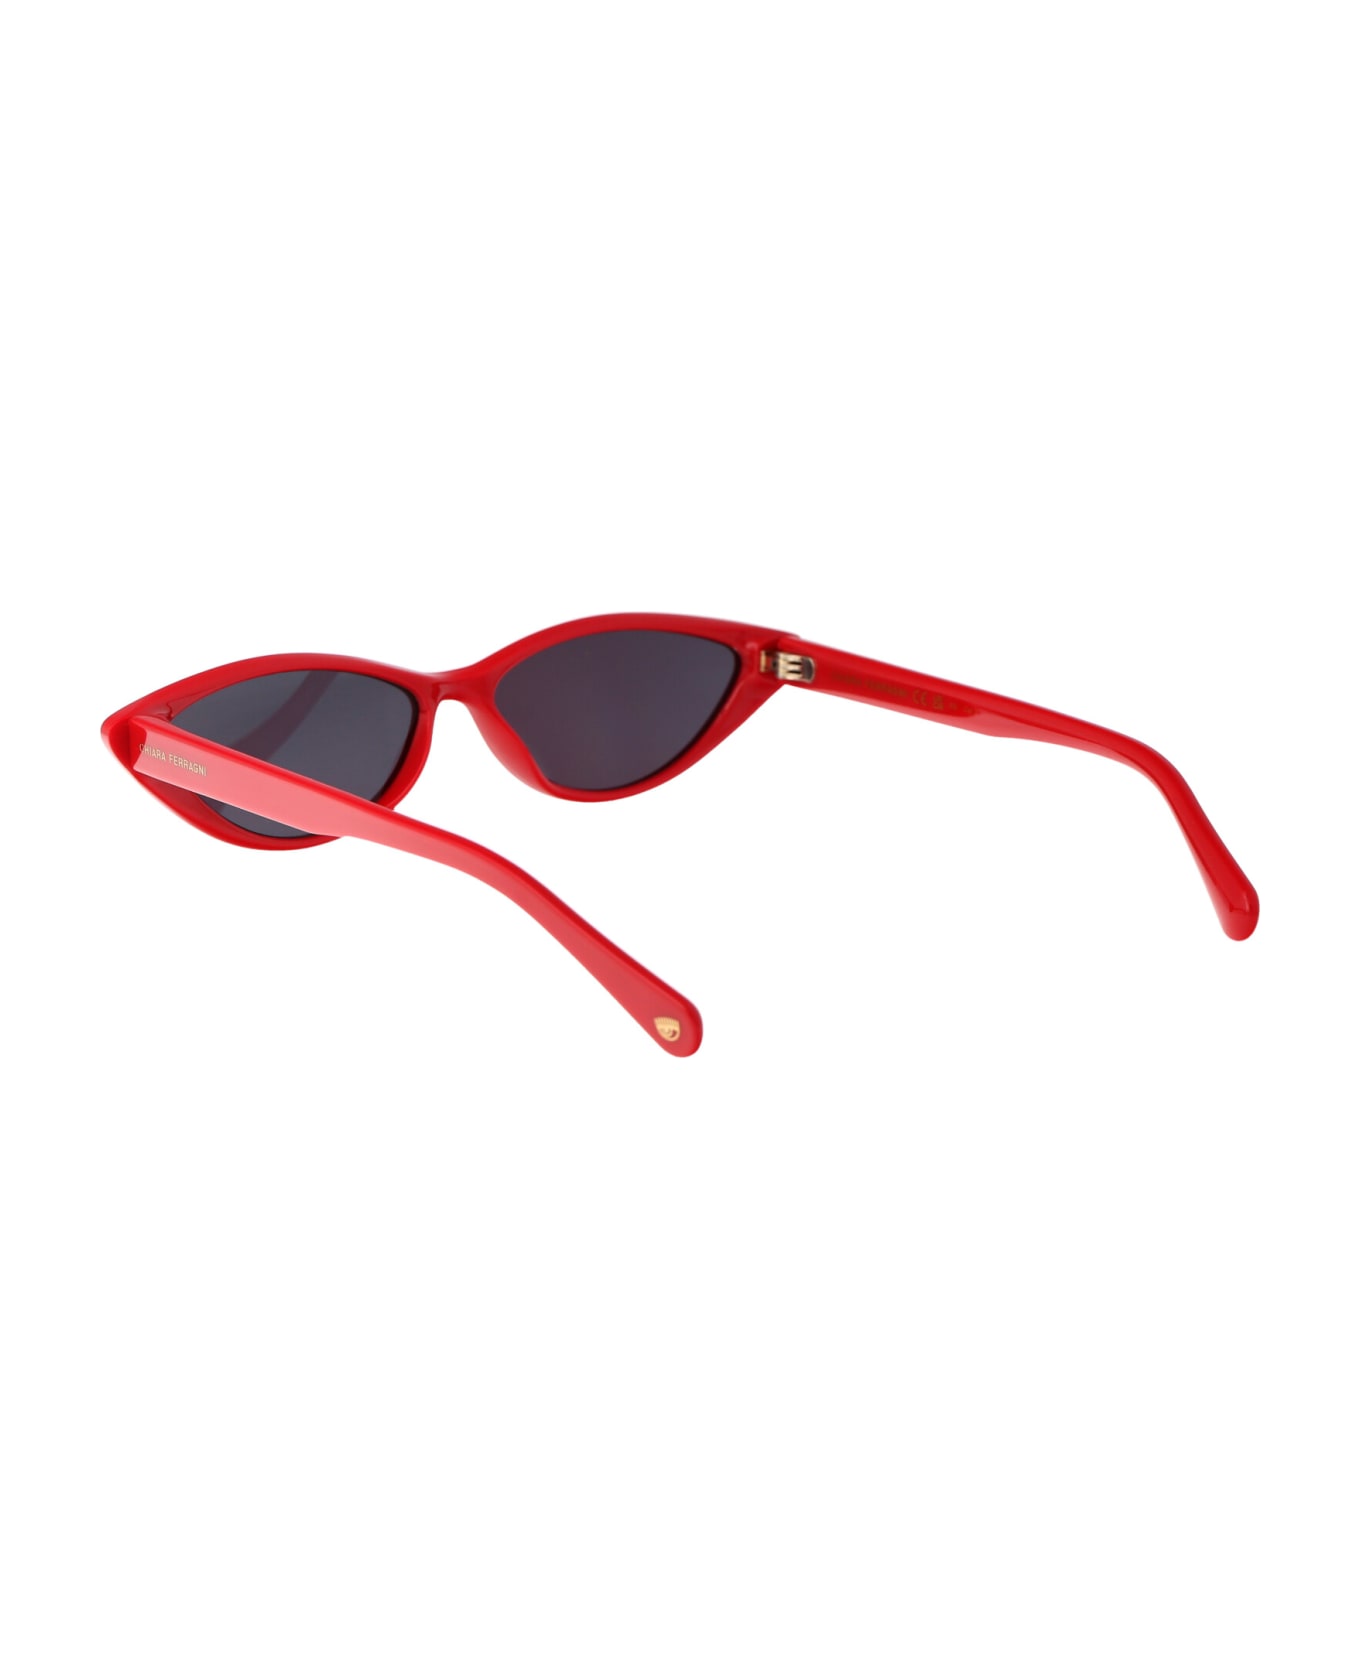 Chiara Ferragni Cf 7033/s Sunglasses - C9AIR RED サングラス